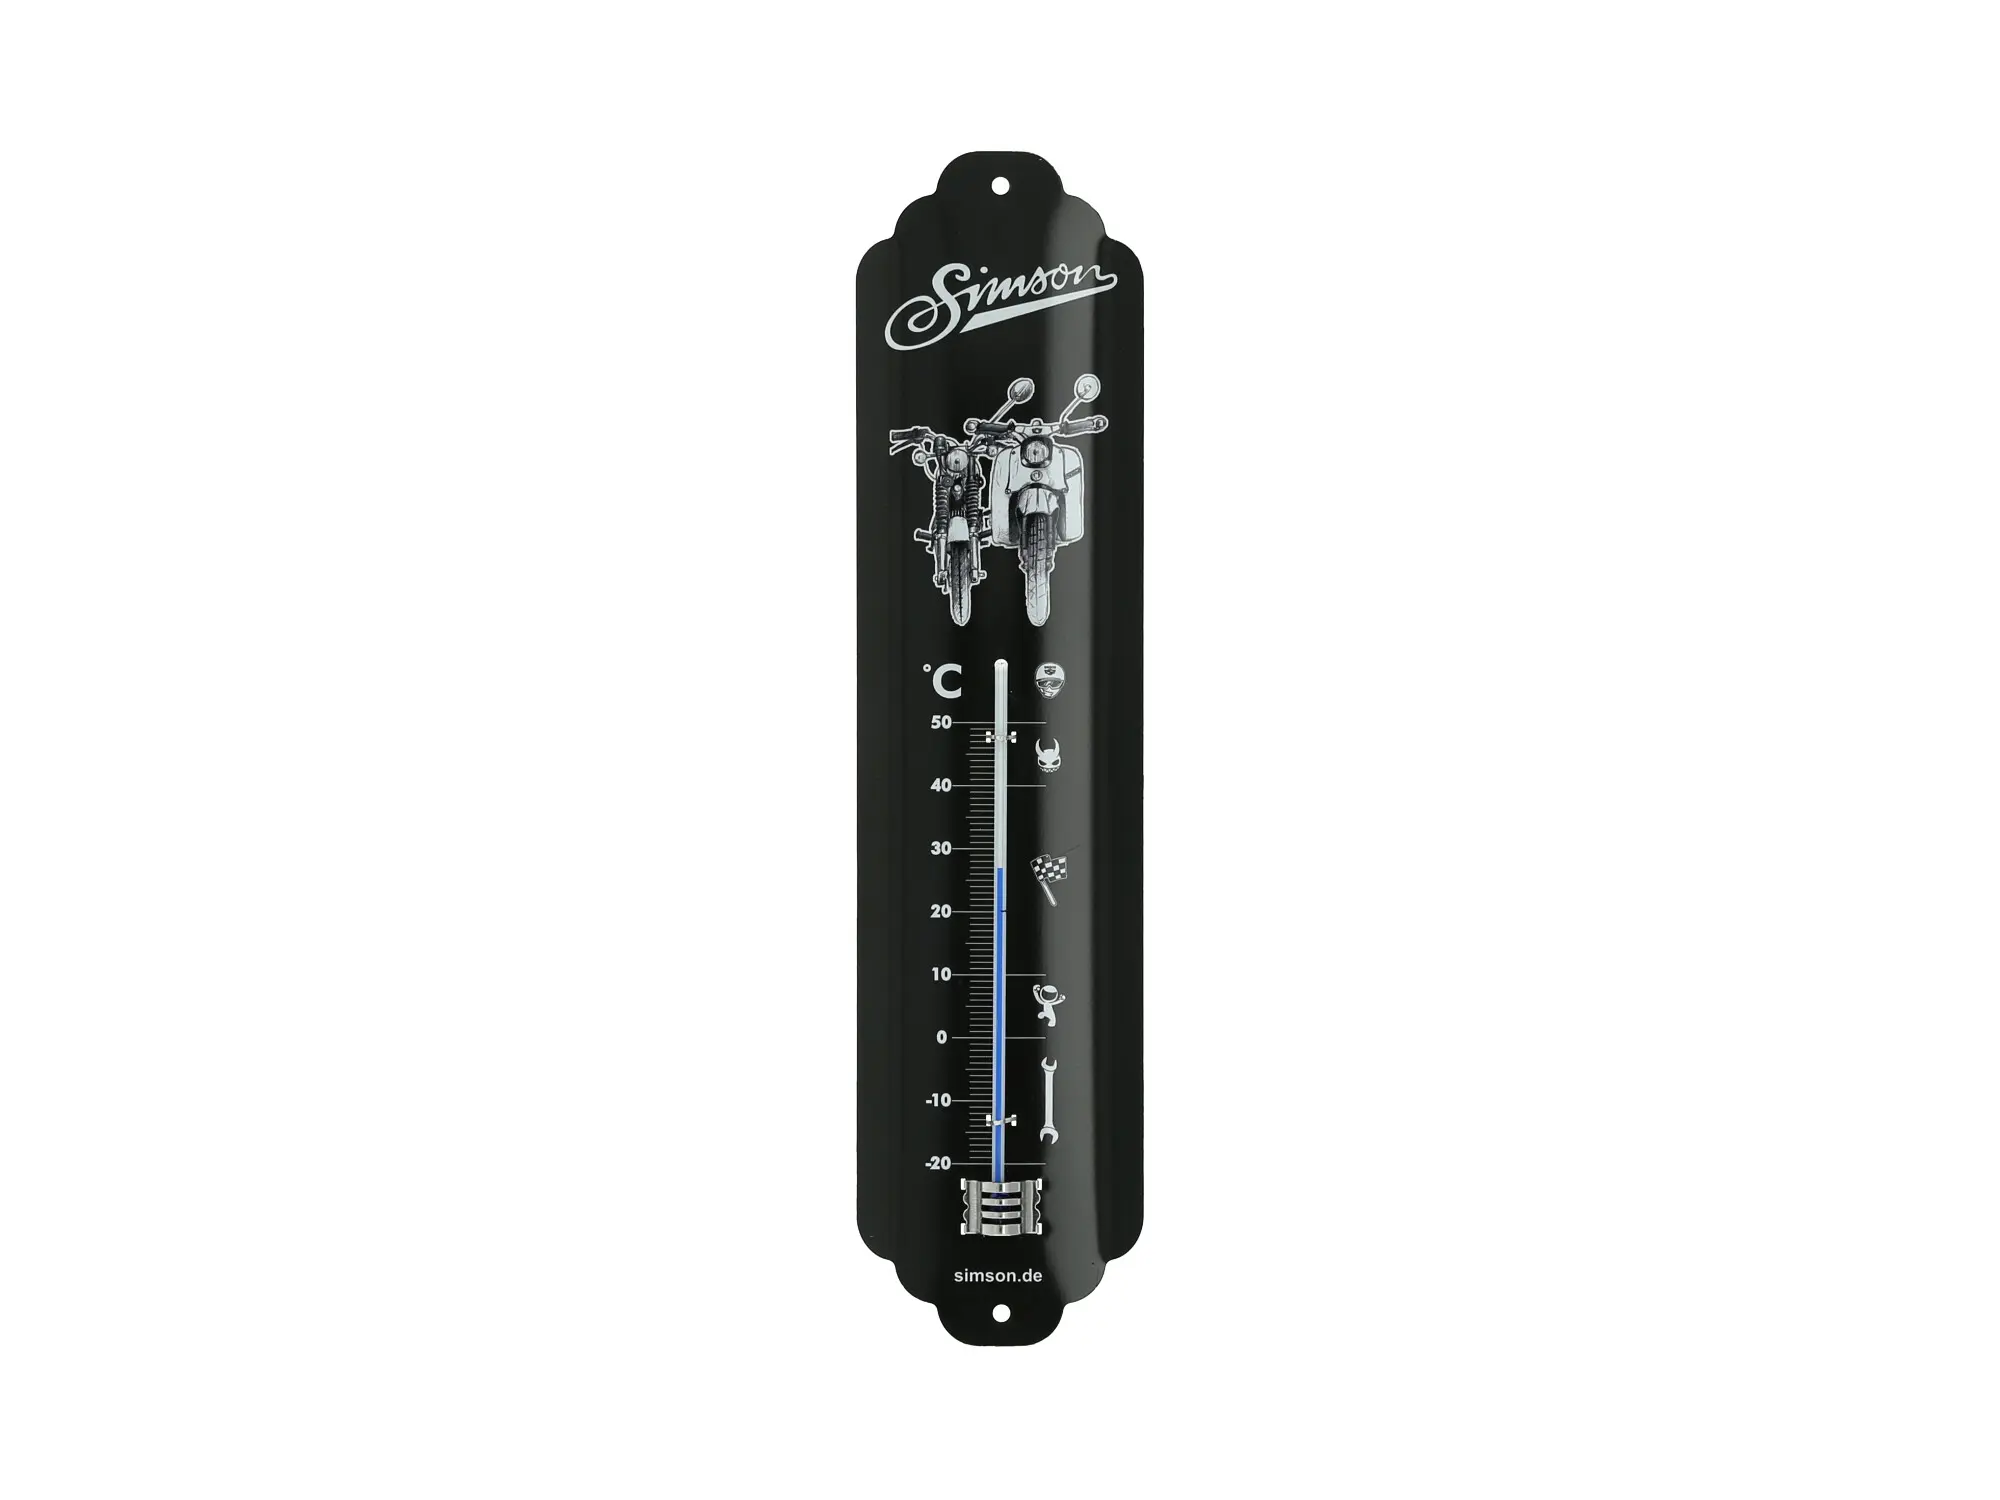 Thermometer "Simson" 6,5x28 cm, schwarz/weiß, Art.-Nr.: 10071005 - Bild 1